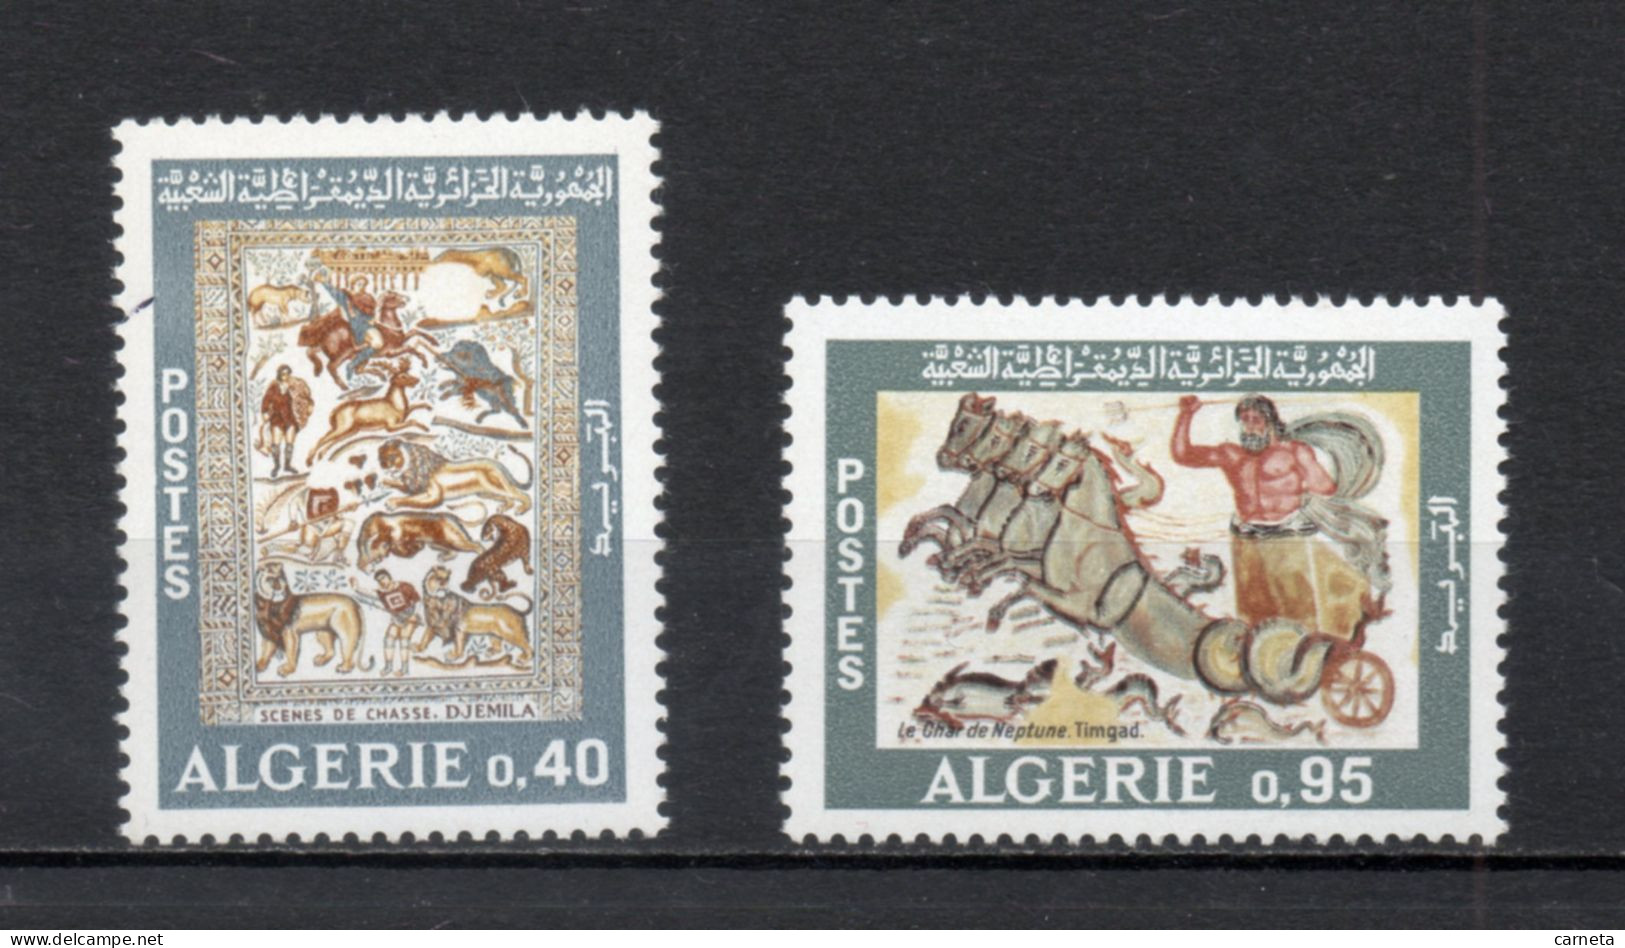 ALGERIE N° 479 + 480   NEUFS SANS CHARNIERE COTE 3.00€    MOSAIQUE ROMAINE - Algeria (1962-...)